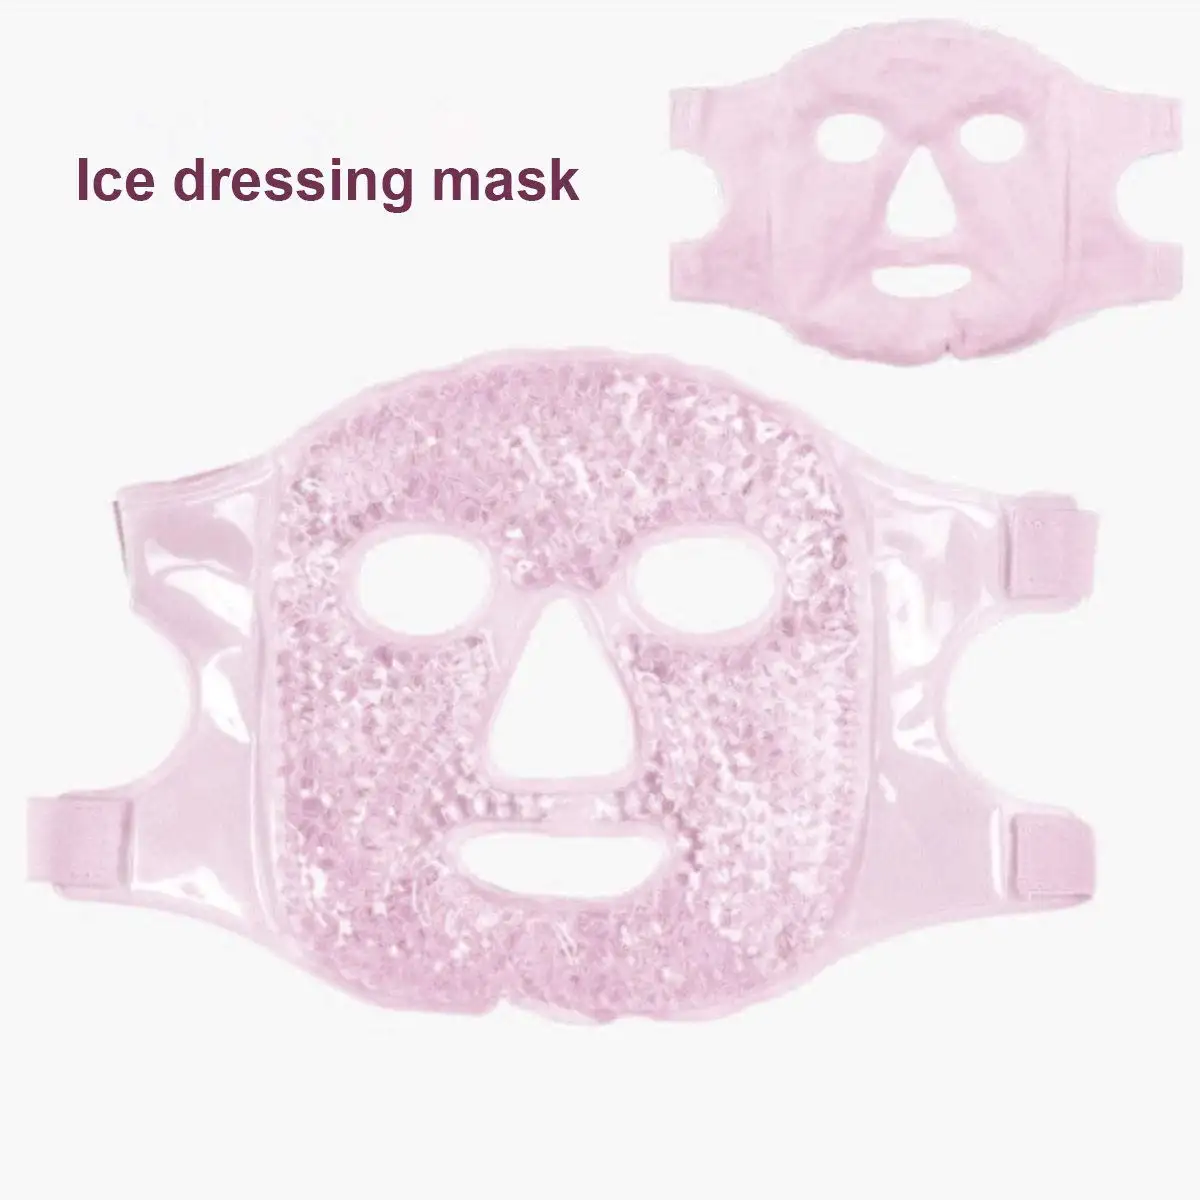 Corea Hot Impacco Freddo maschera di bellezza viso maskss bellezza idratante su tutto il viso maskss altri prodotti per la cura